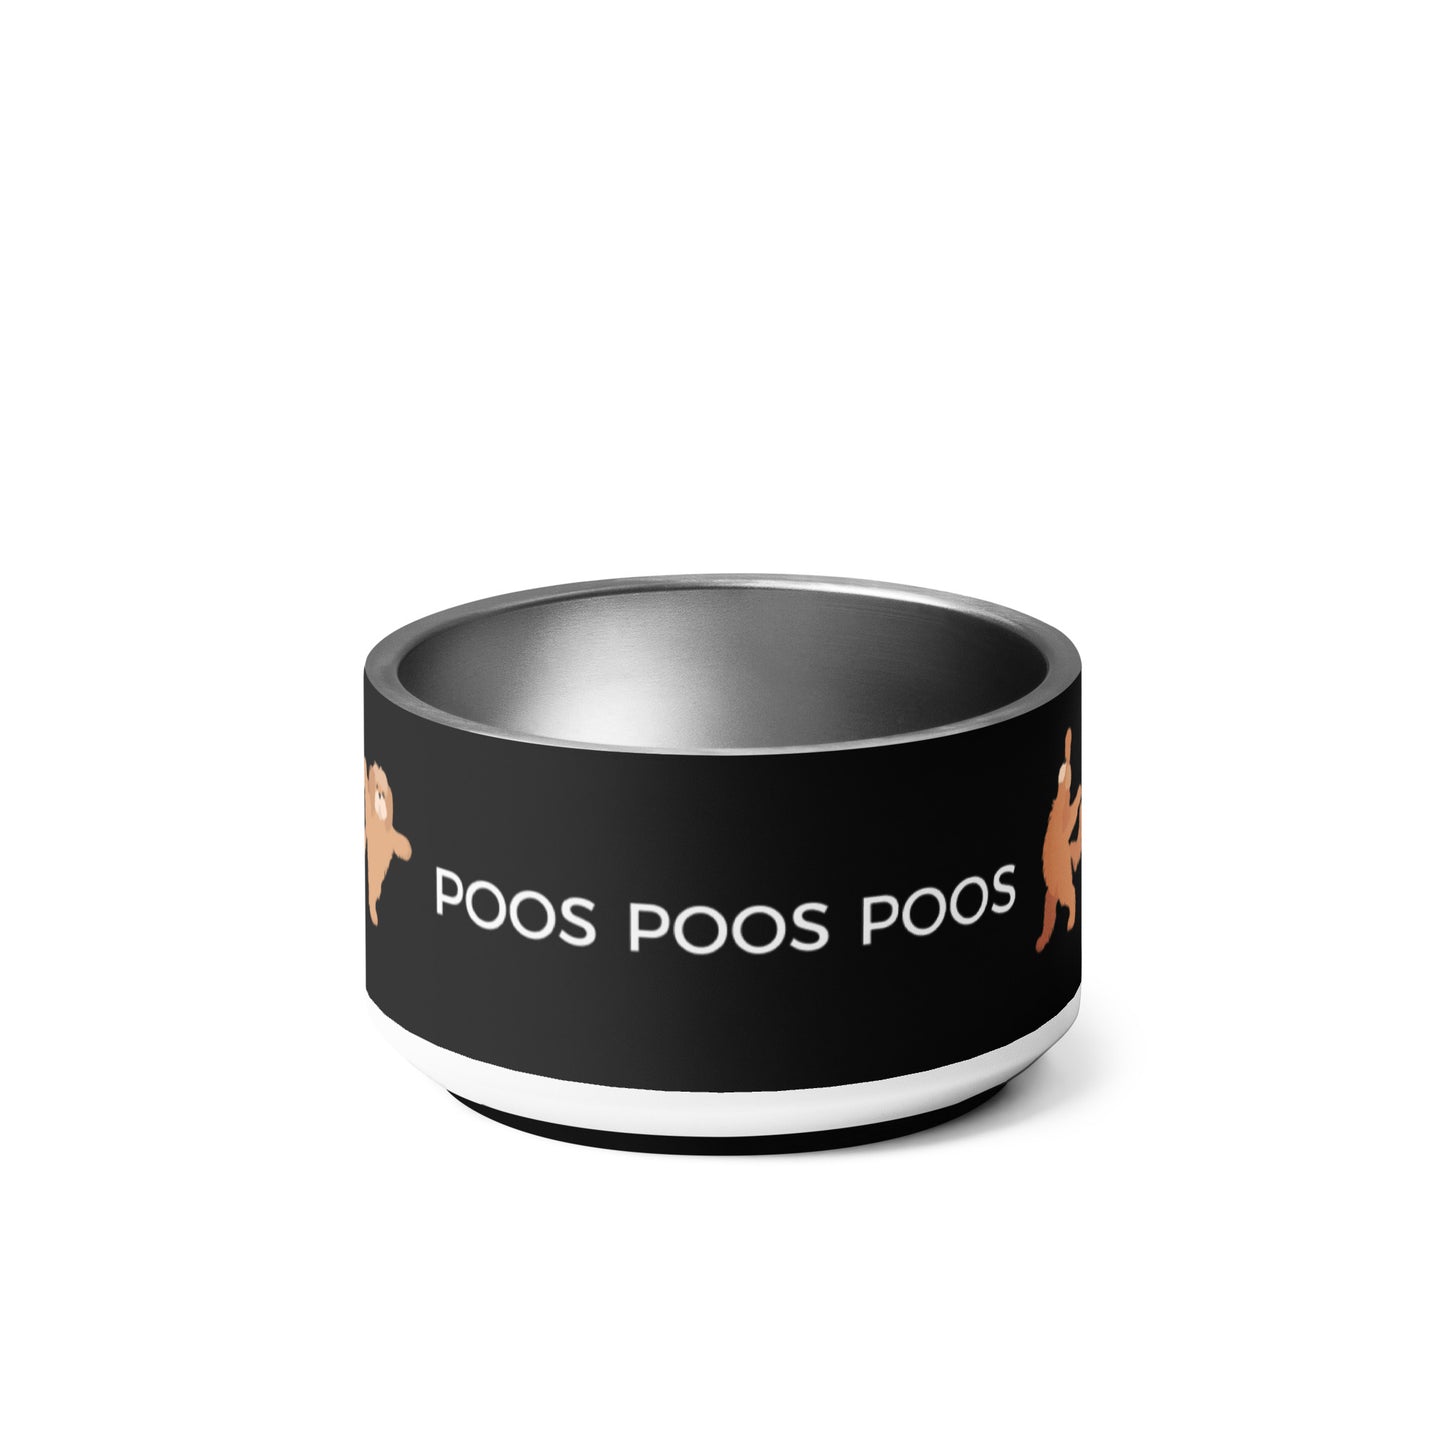 "Poos, Poos, Poos" Pet bowl